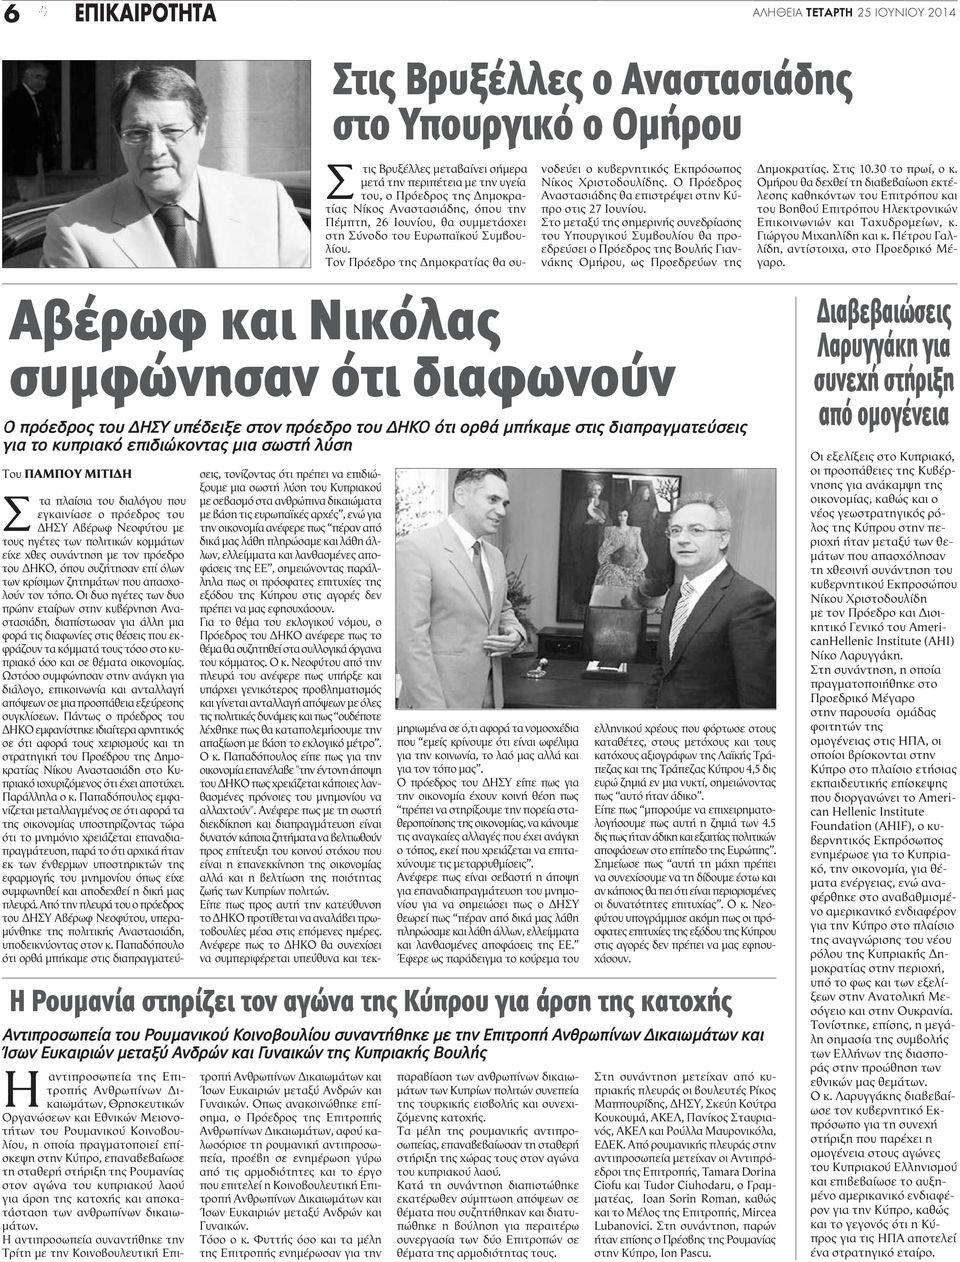 Ο Πρόεδρος Αναστασιάδης θα επιστρέψει στην Κύπρο στις 27 Ιουνίου.